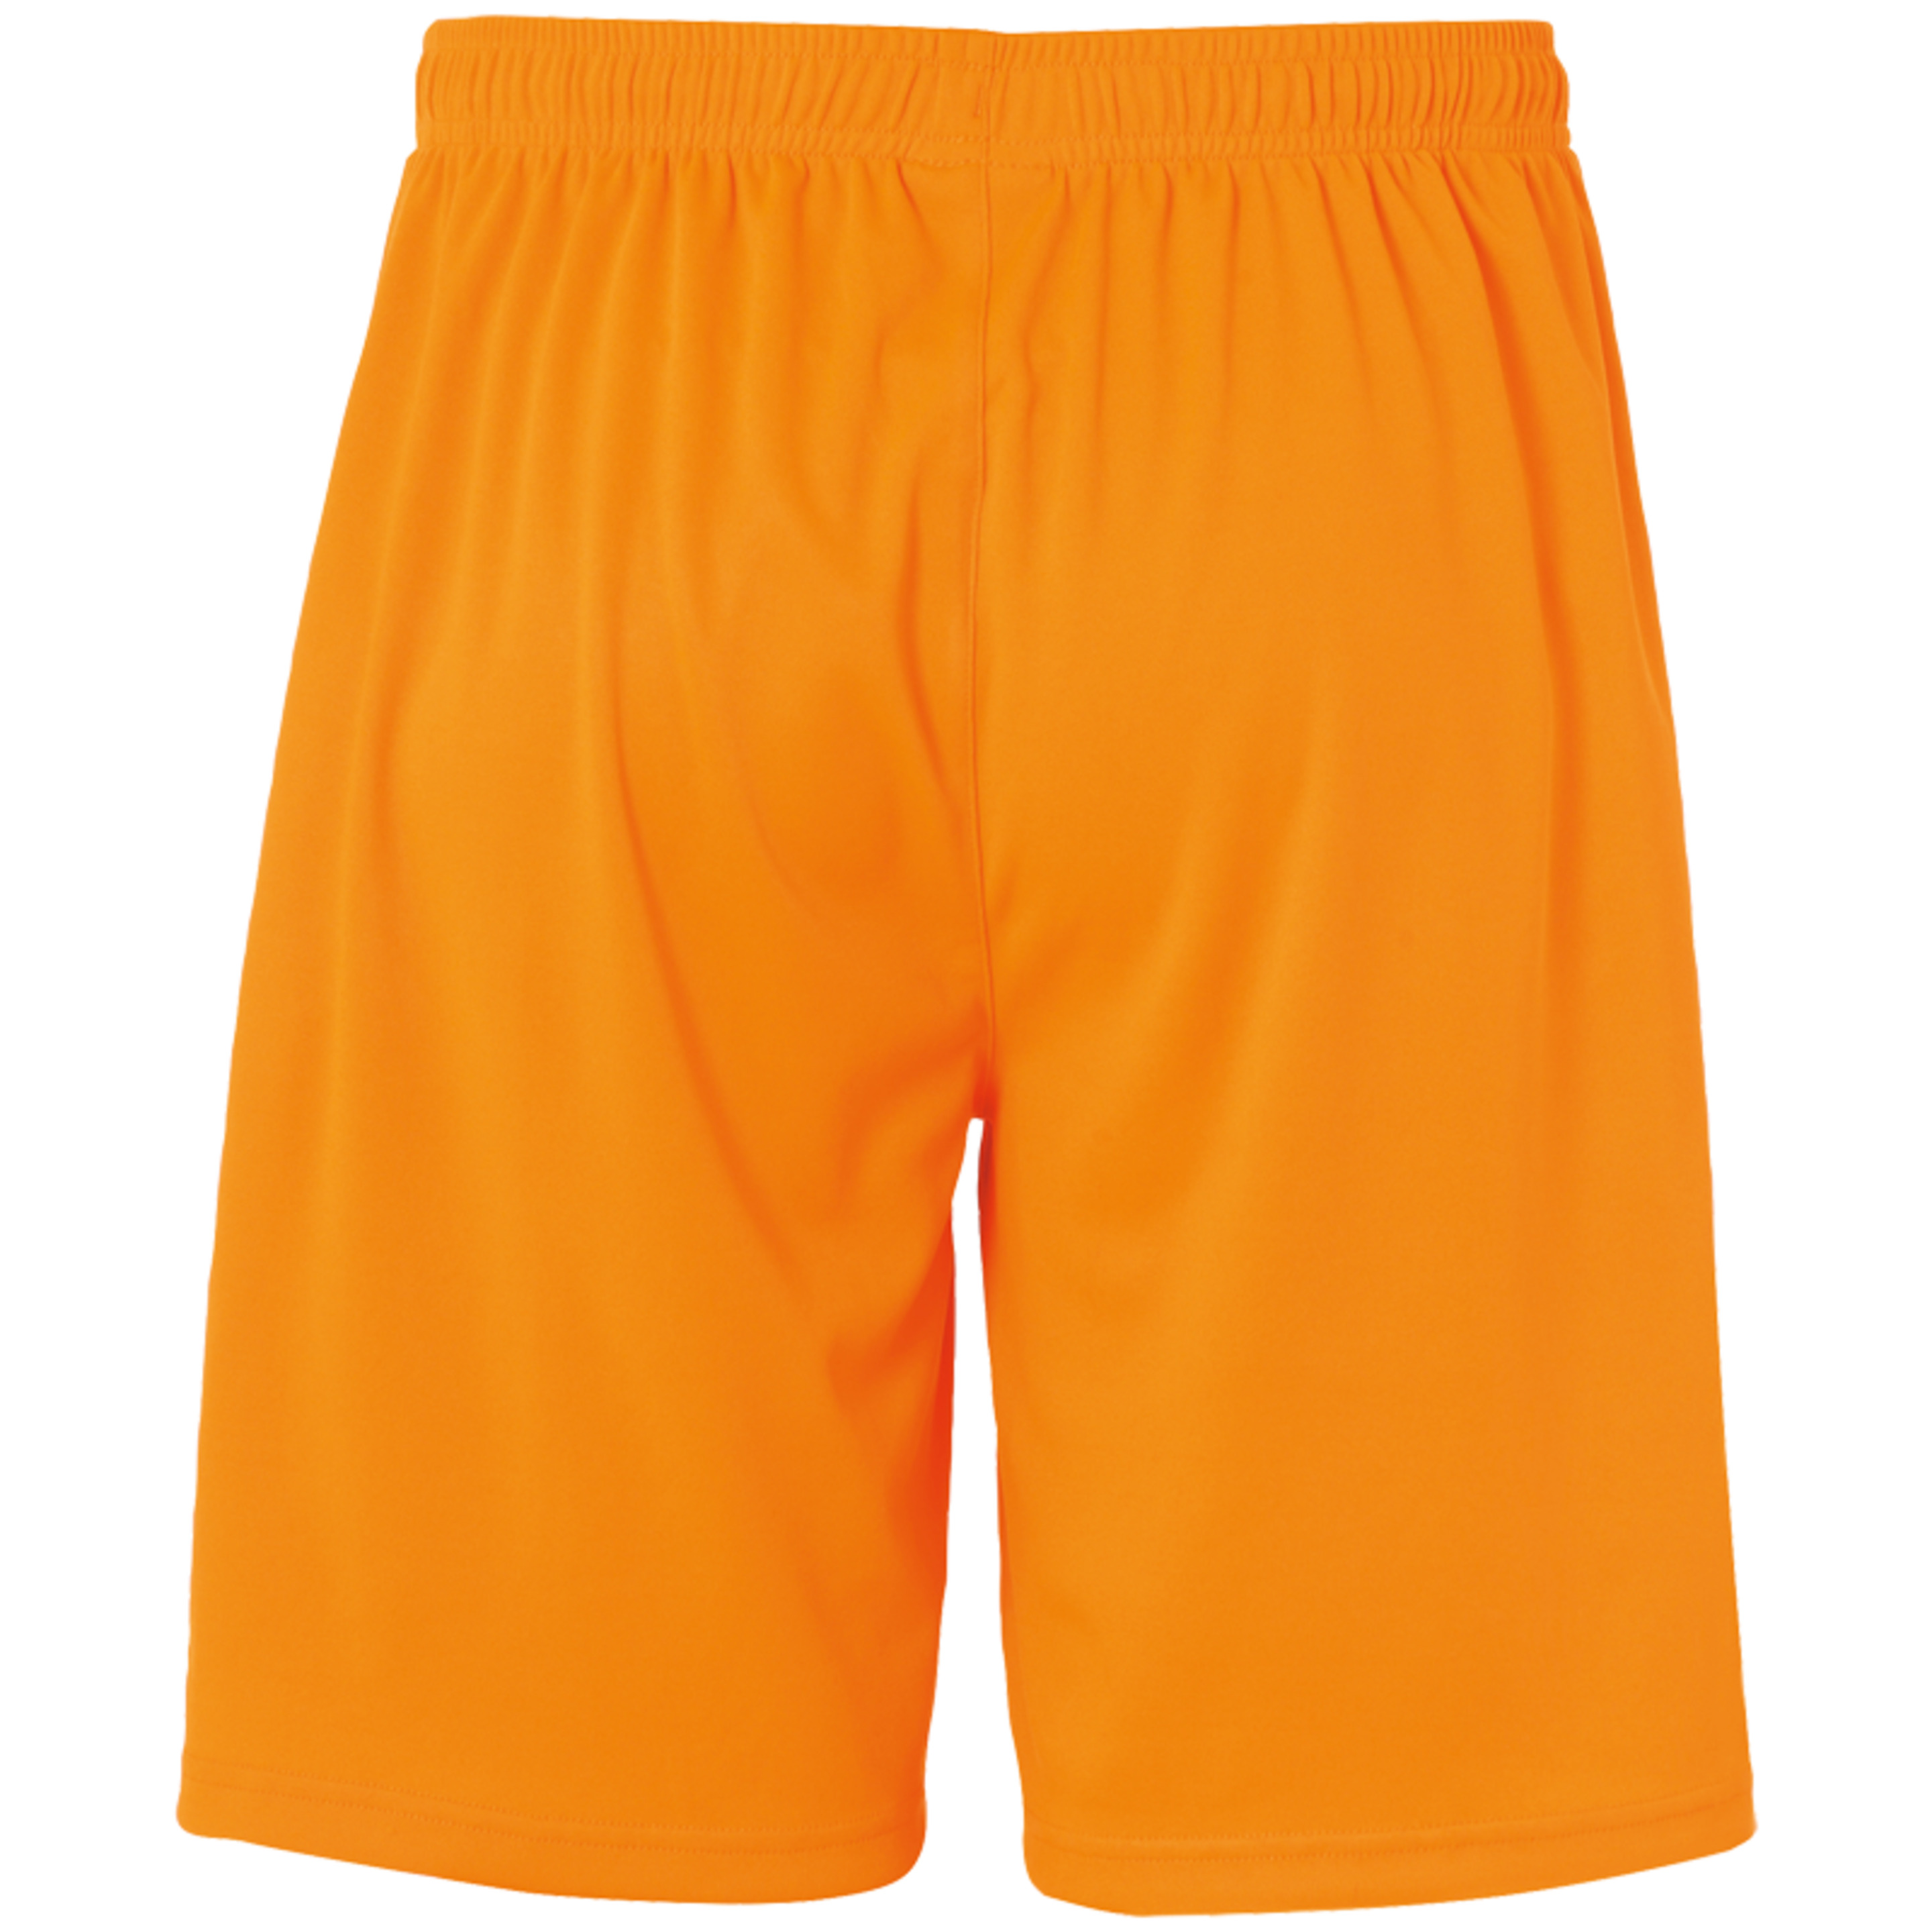 Center Basic Shorts Without Slip Orange Uhlsport